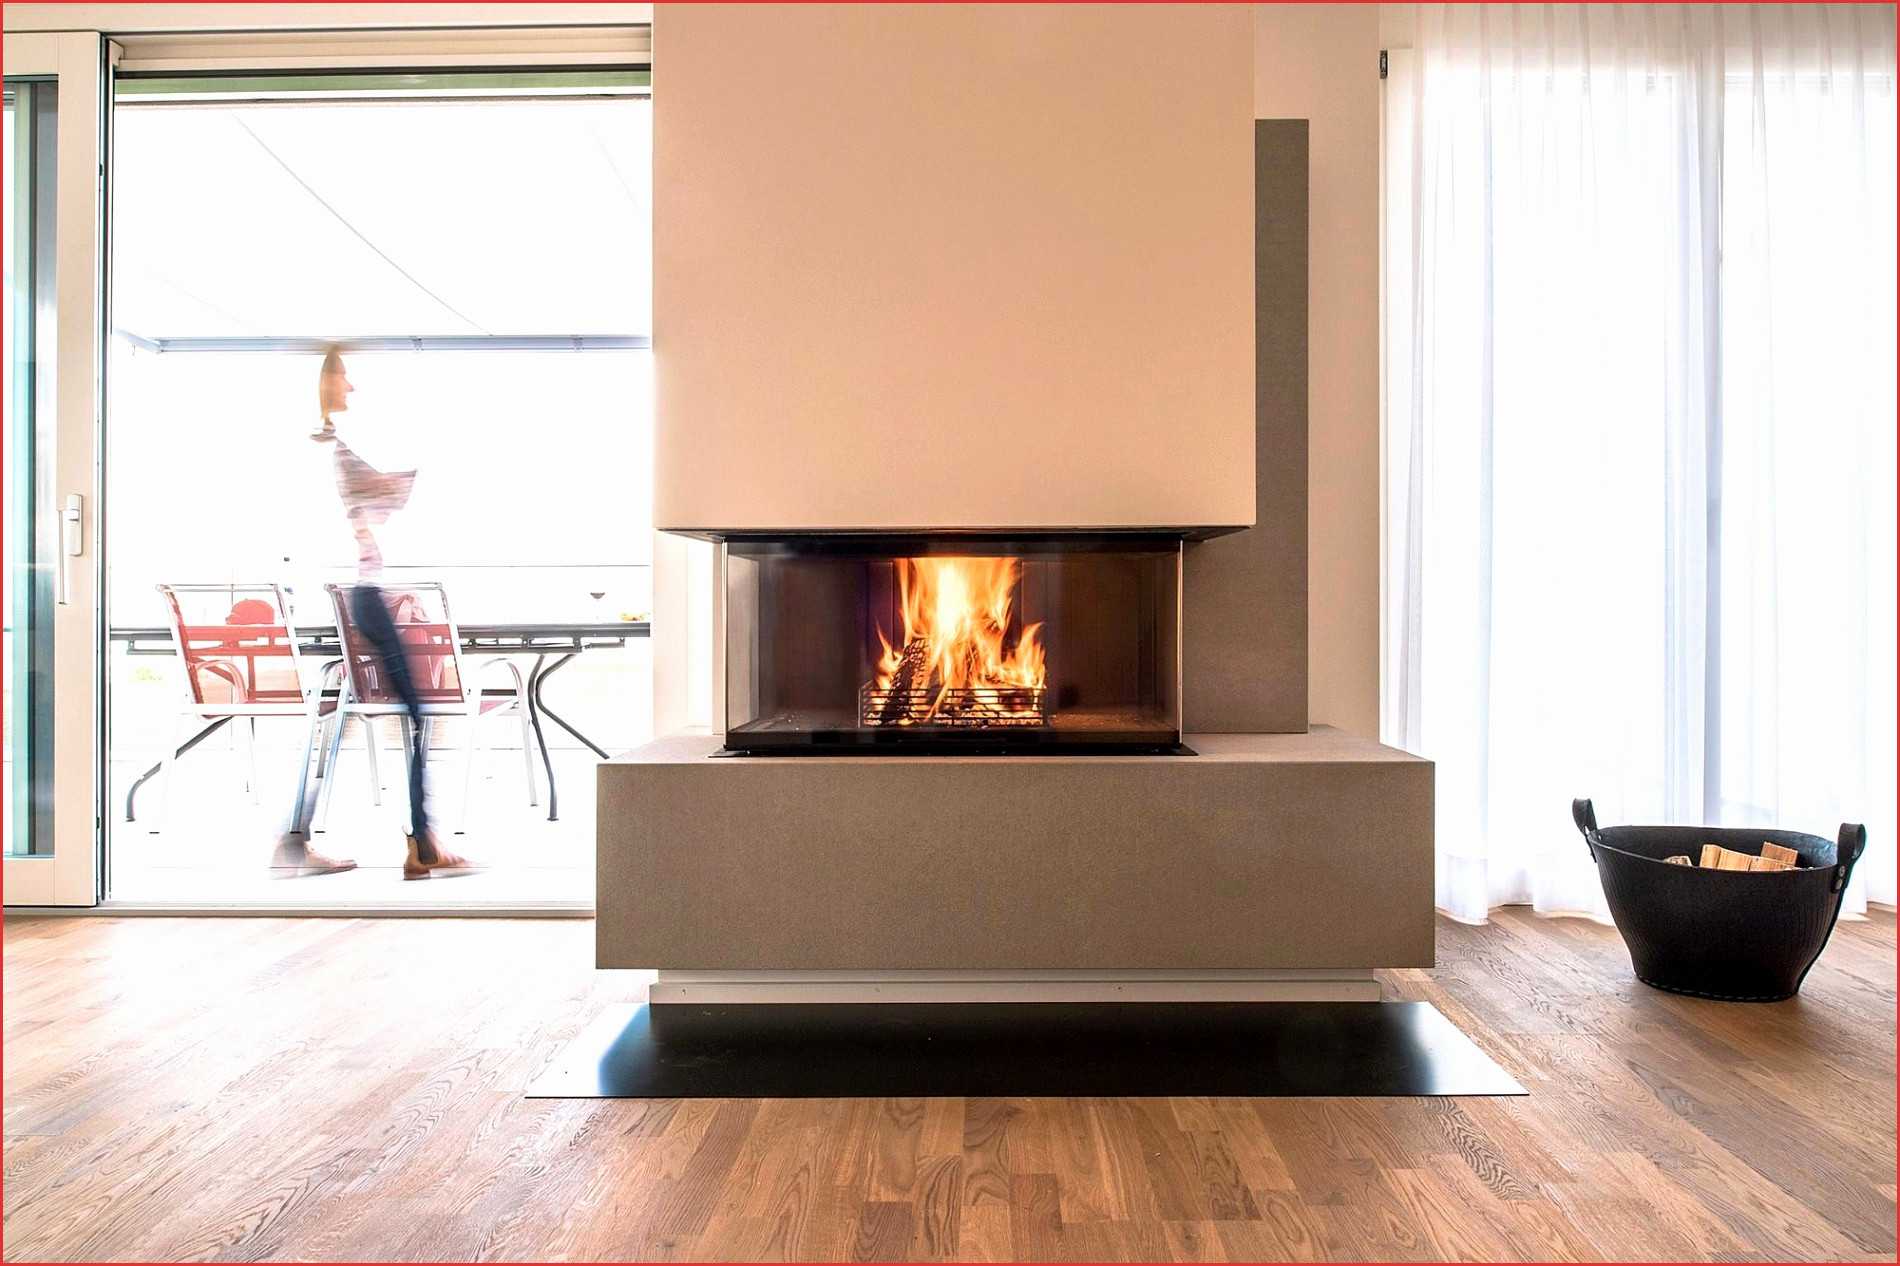 Decorative Gas Fireplace Elegant Moderner Holzofen Luxus Kamin In Der Wand Frisch Moderne